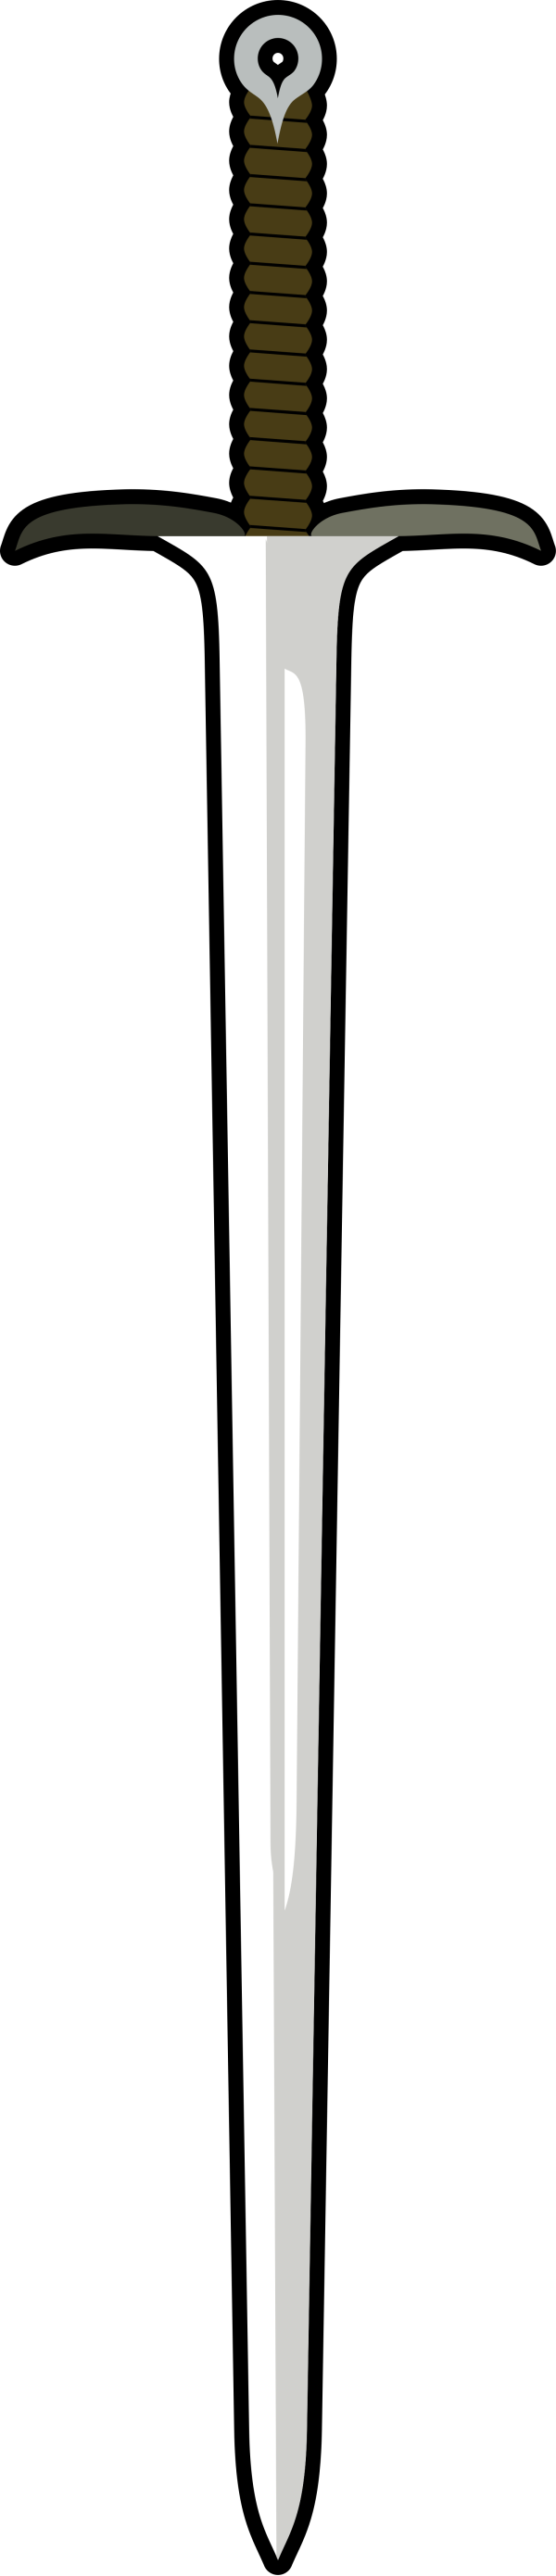 Sword PNG Clip art